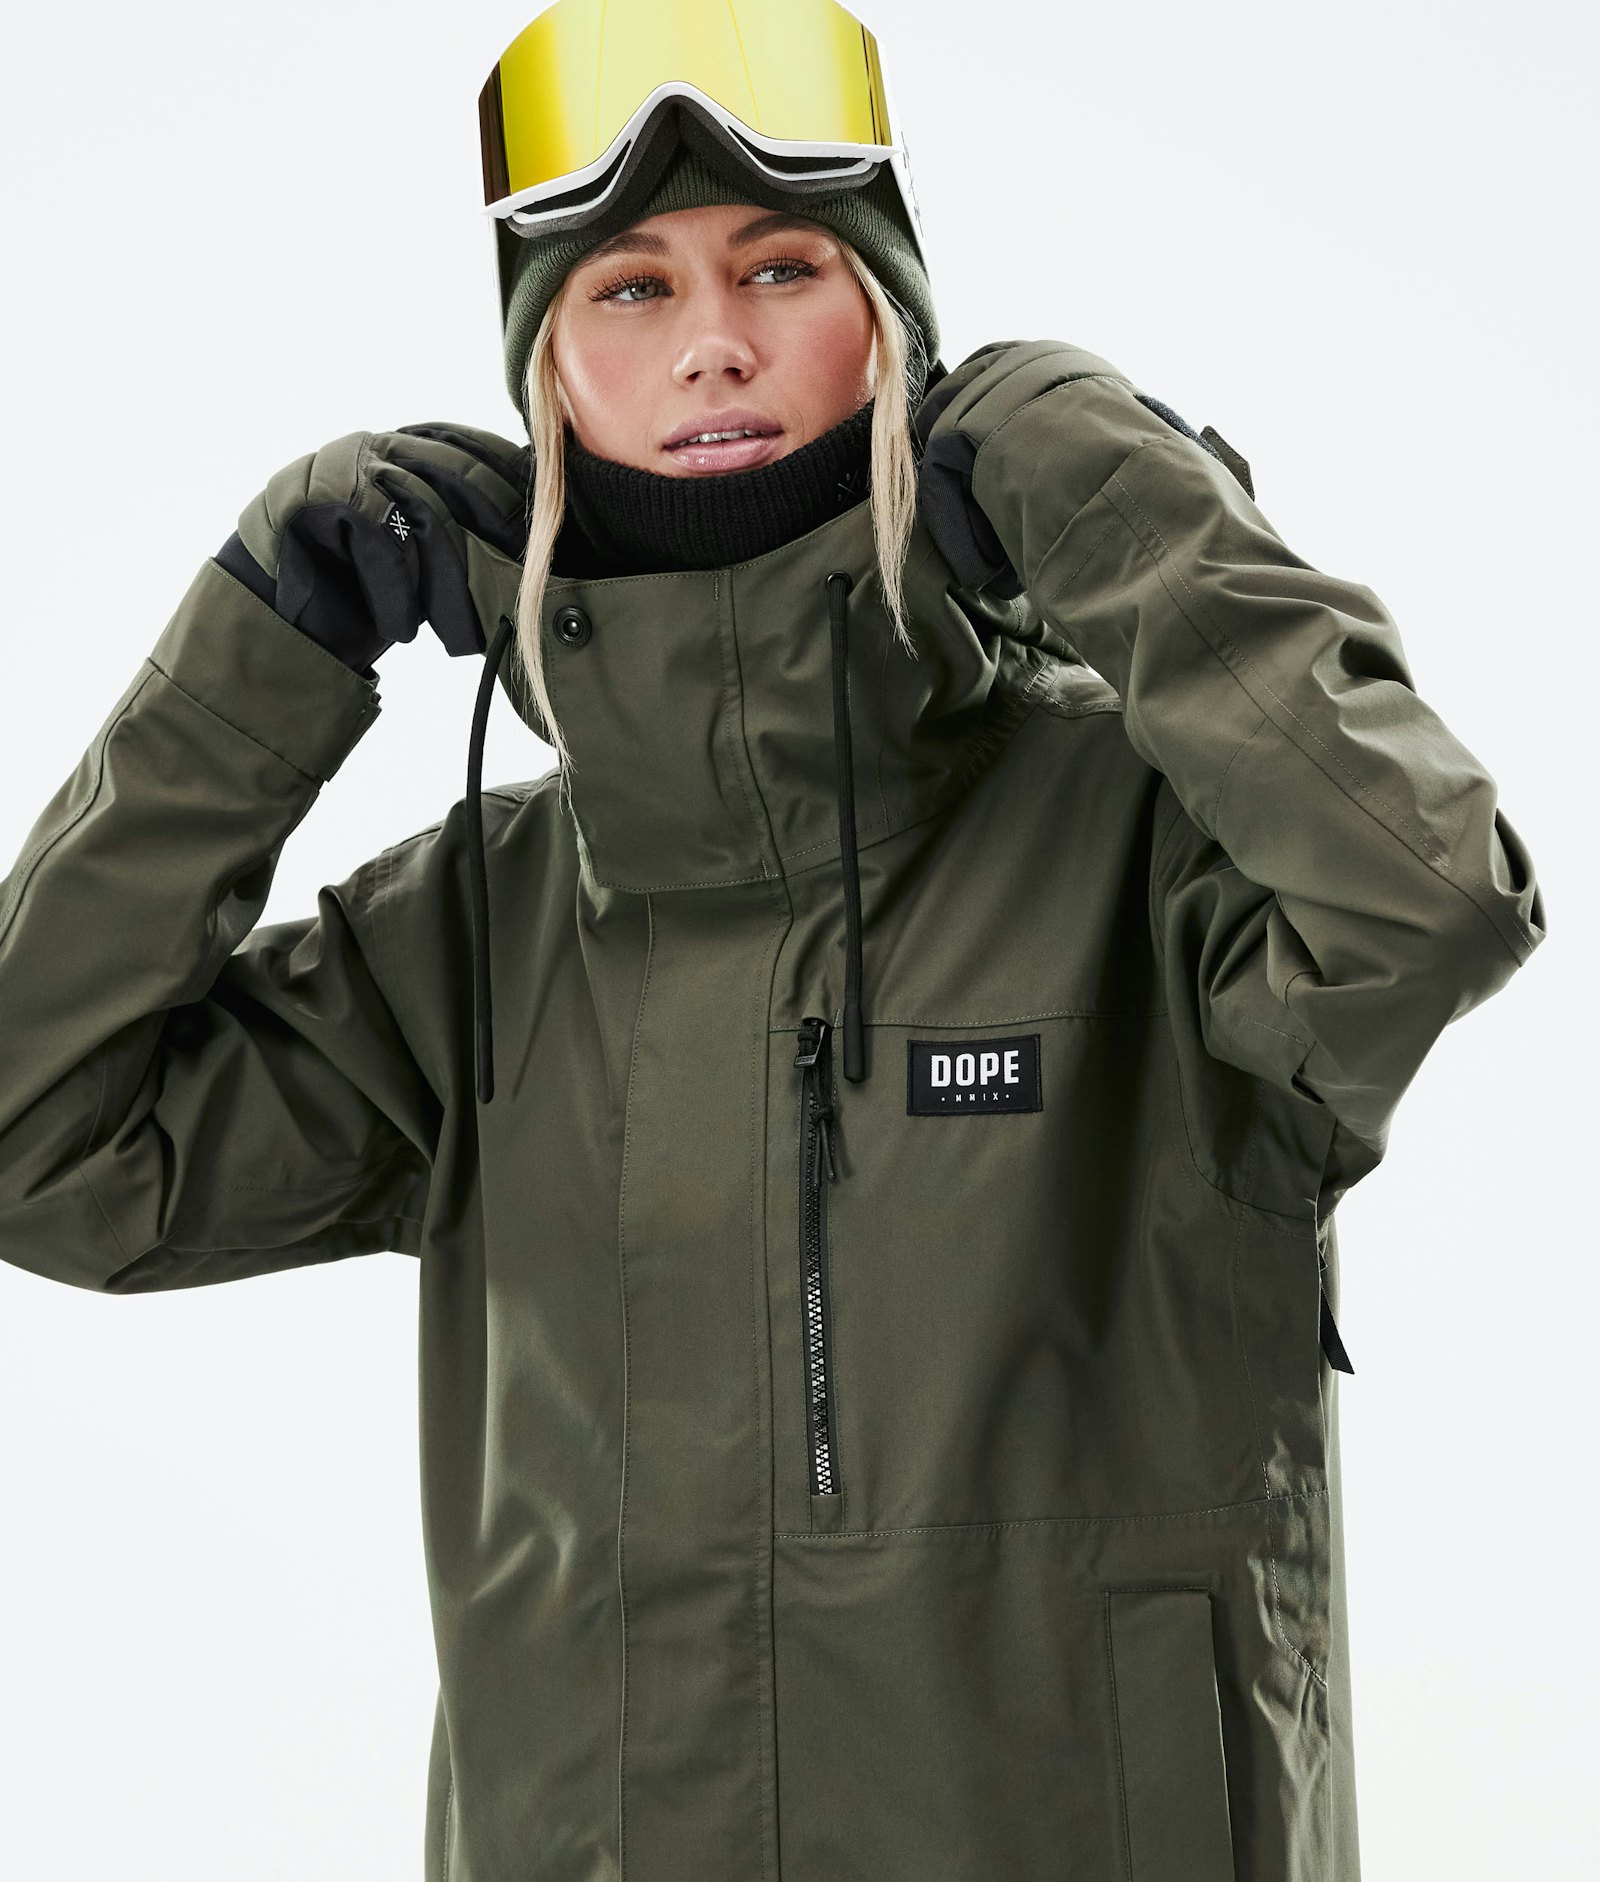 Dope Blizzard W Full Zip 2021 Snowboard Jacket Women Olive Green Renewed